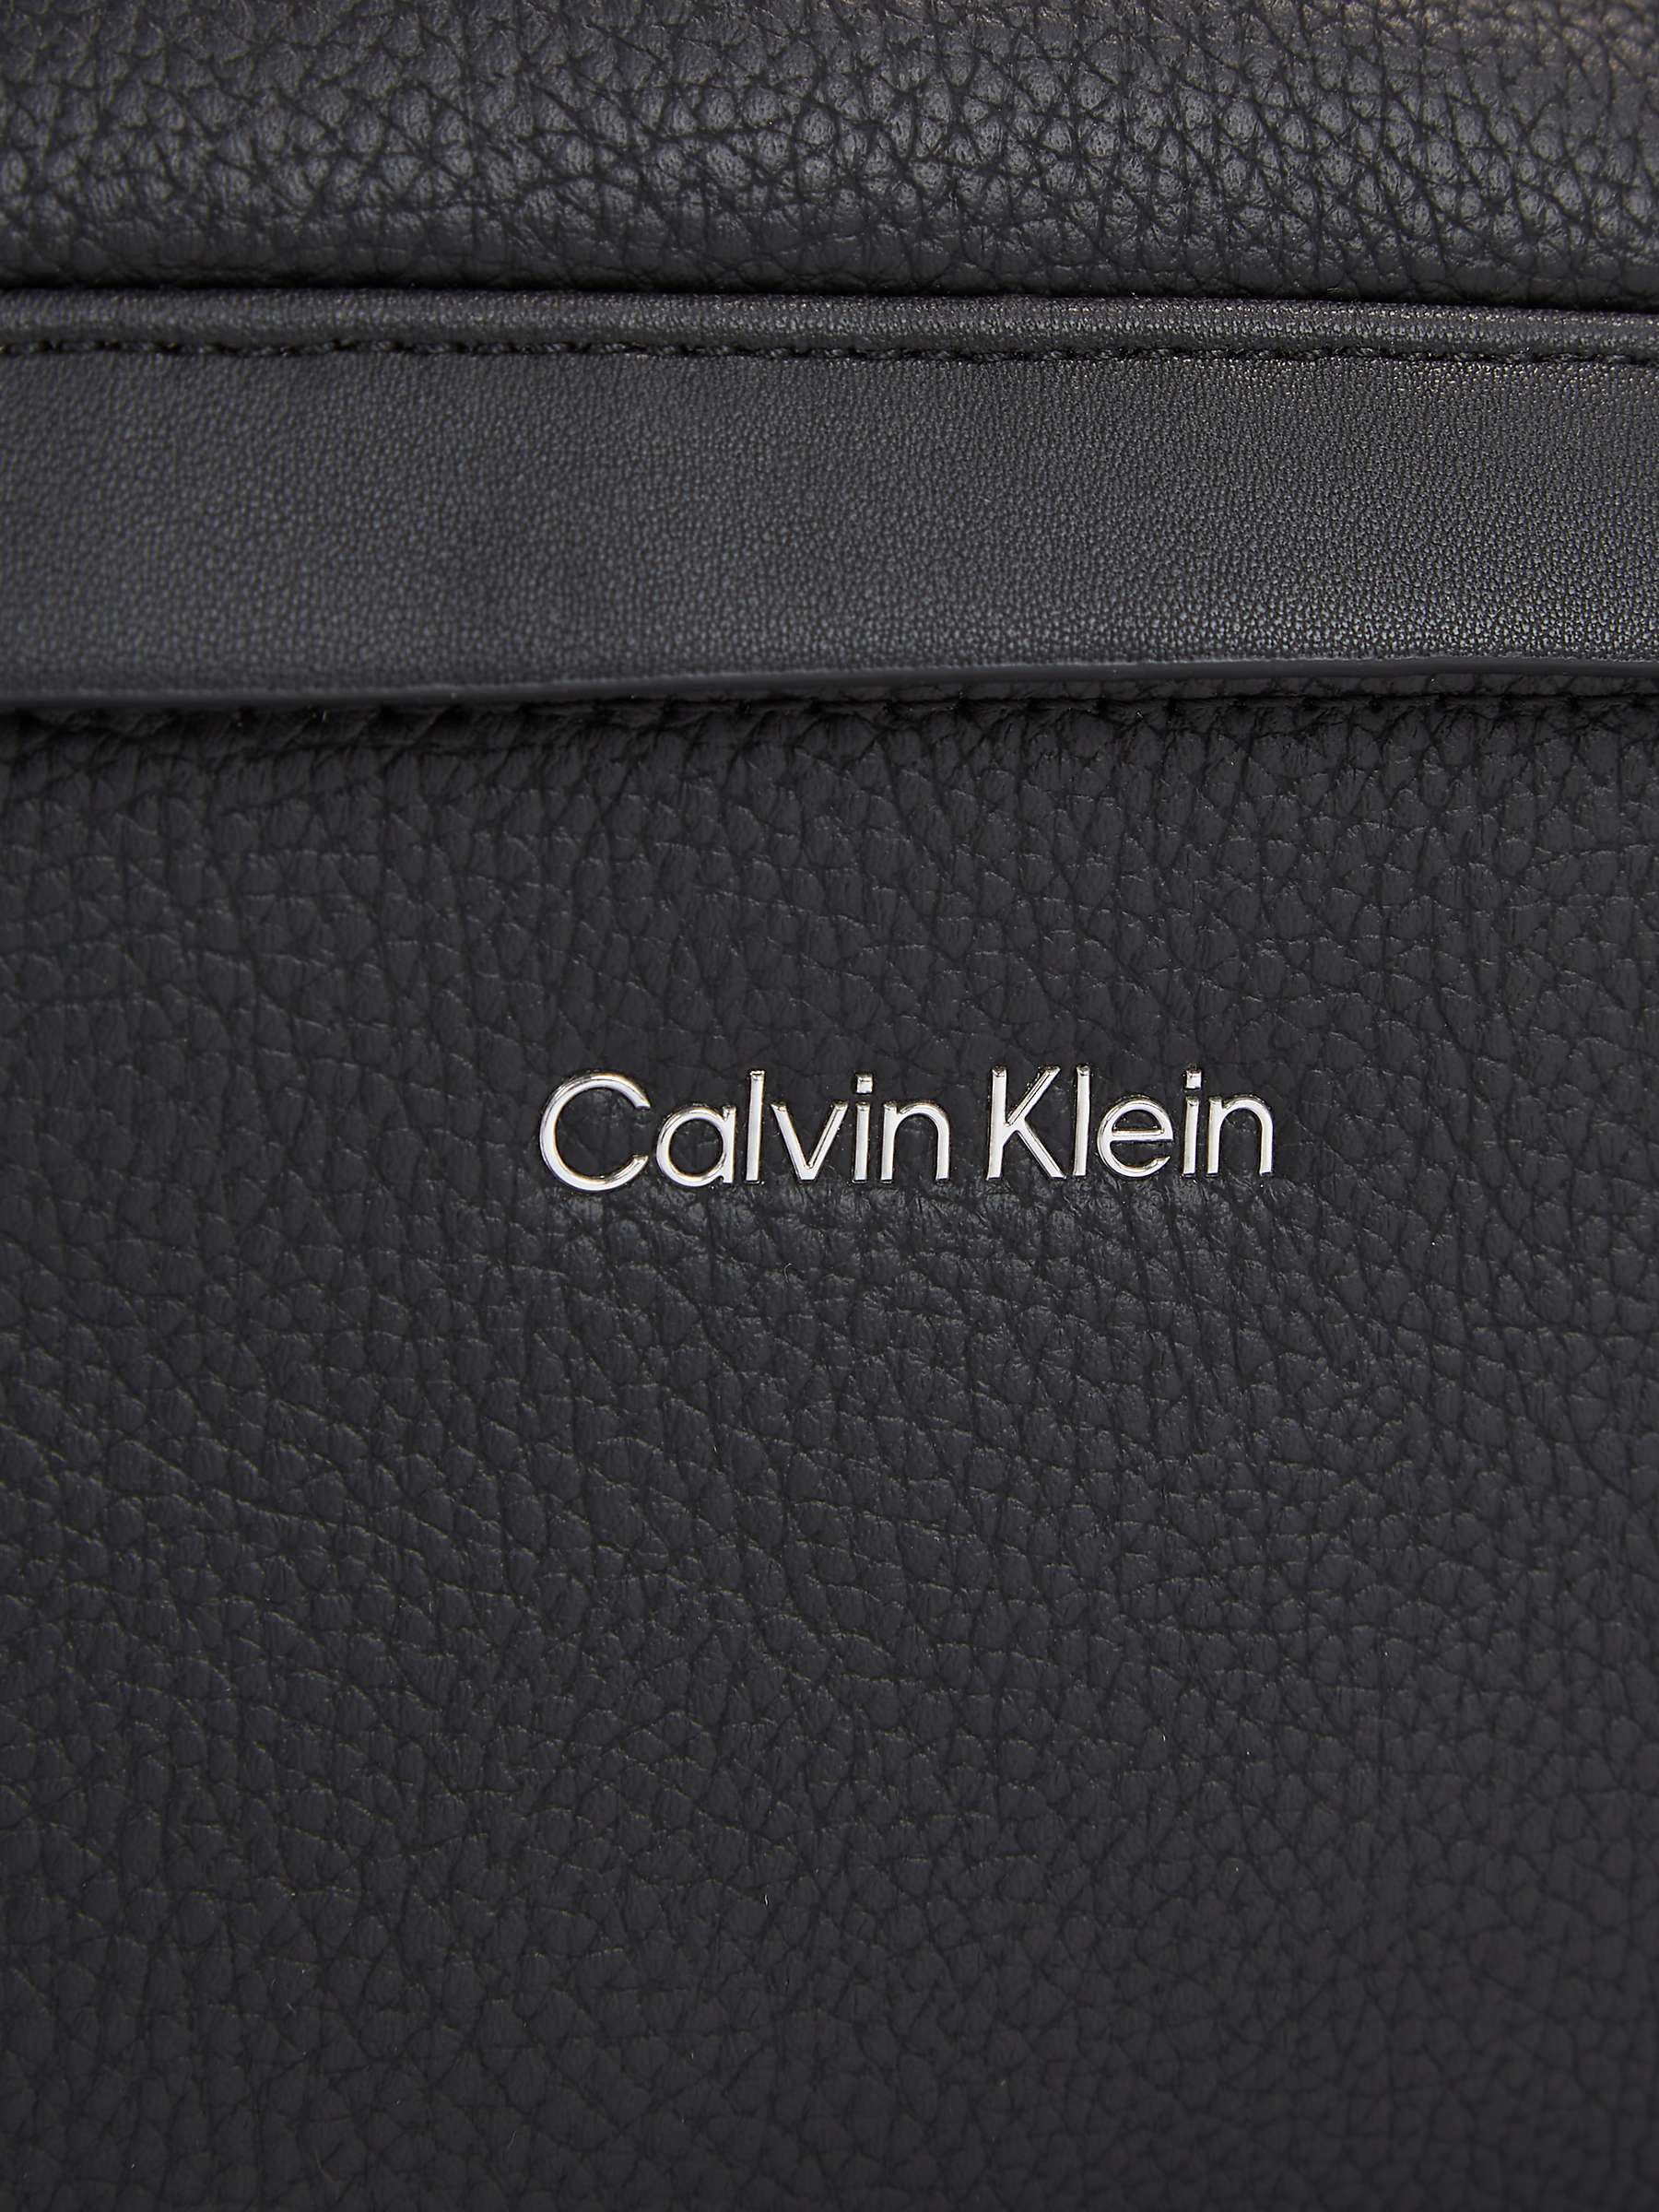 Buy Calvin Klein Bumbag, Black Online at johnlewis.com